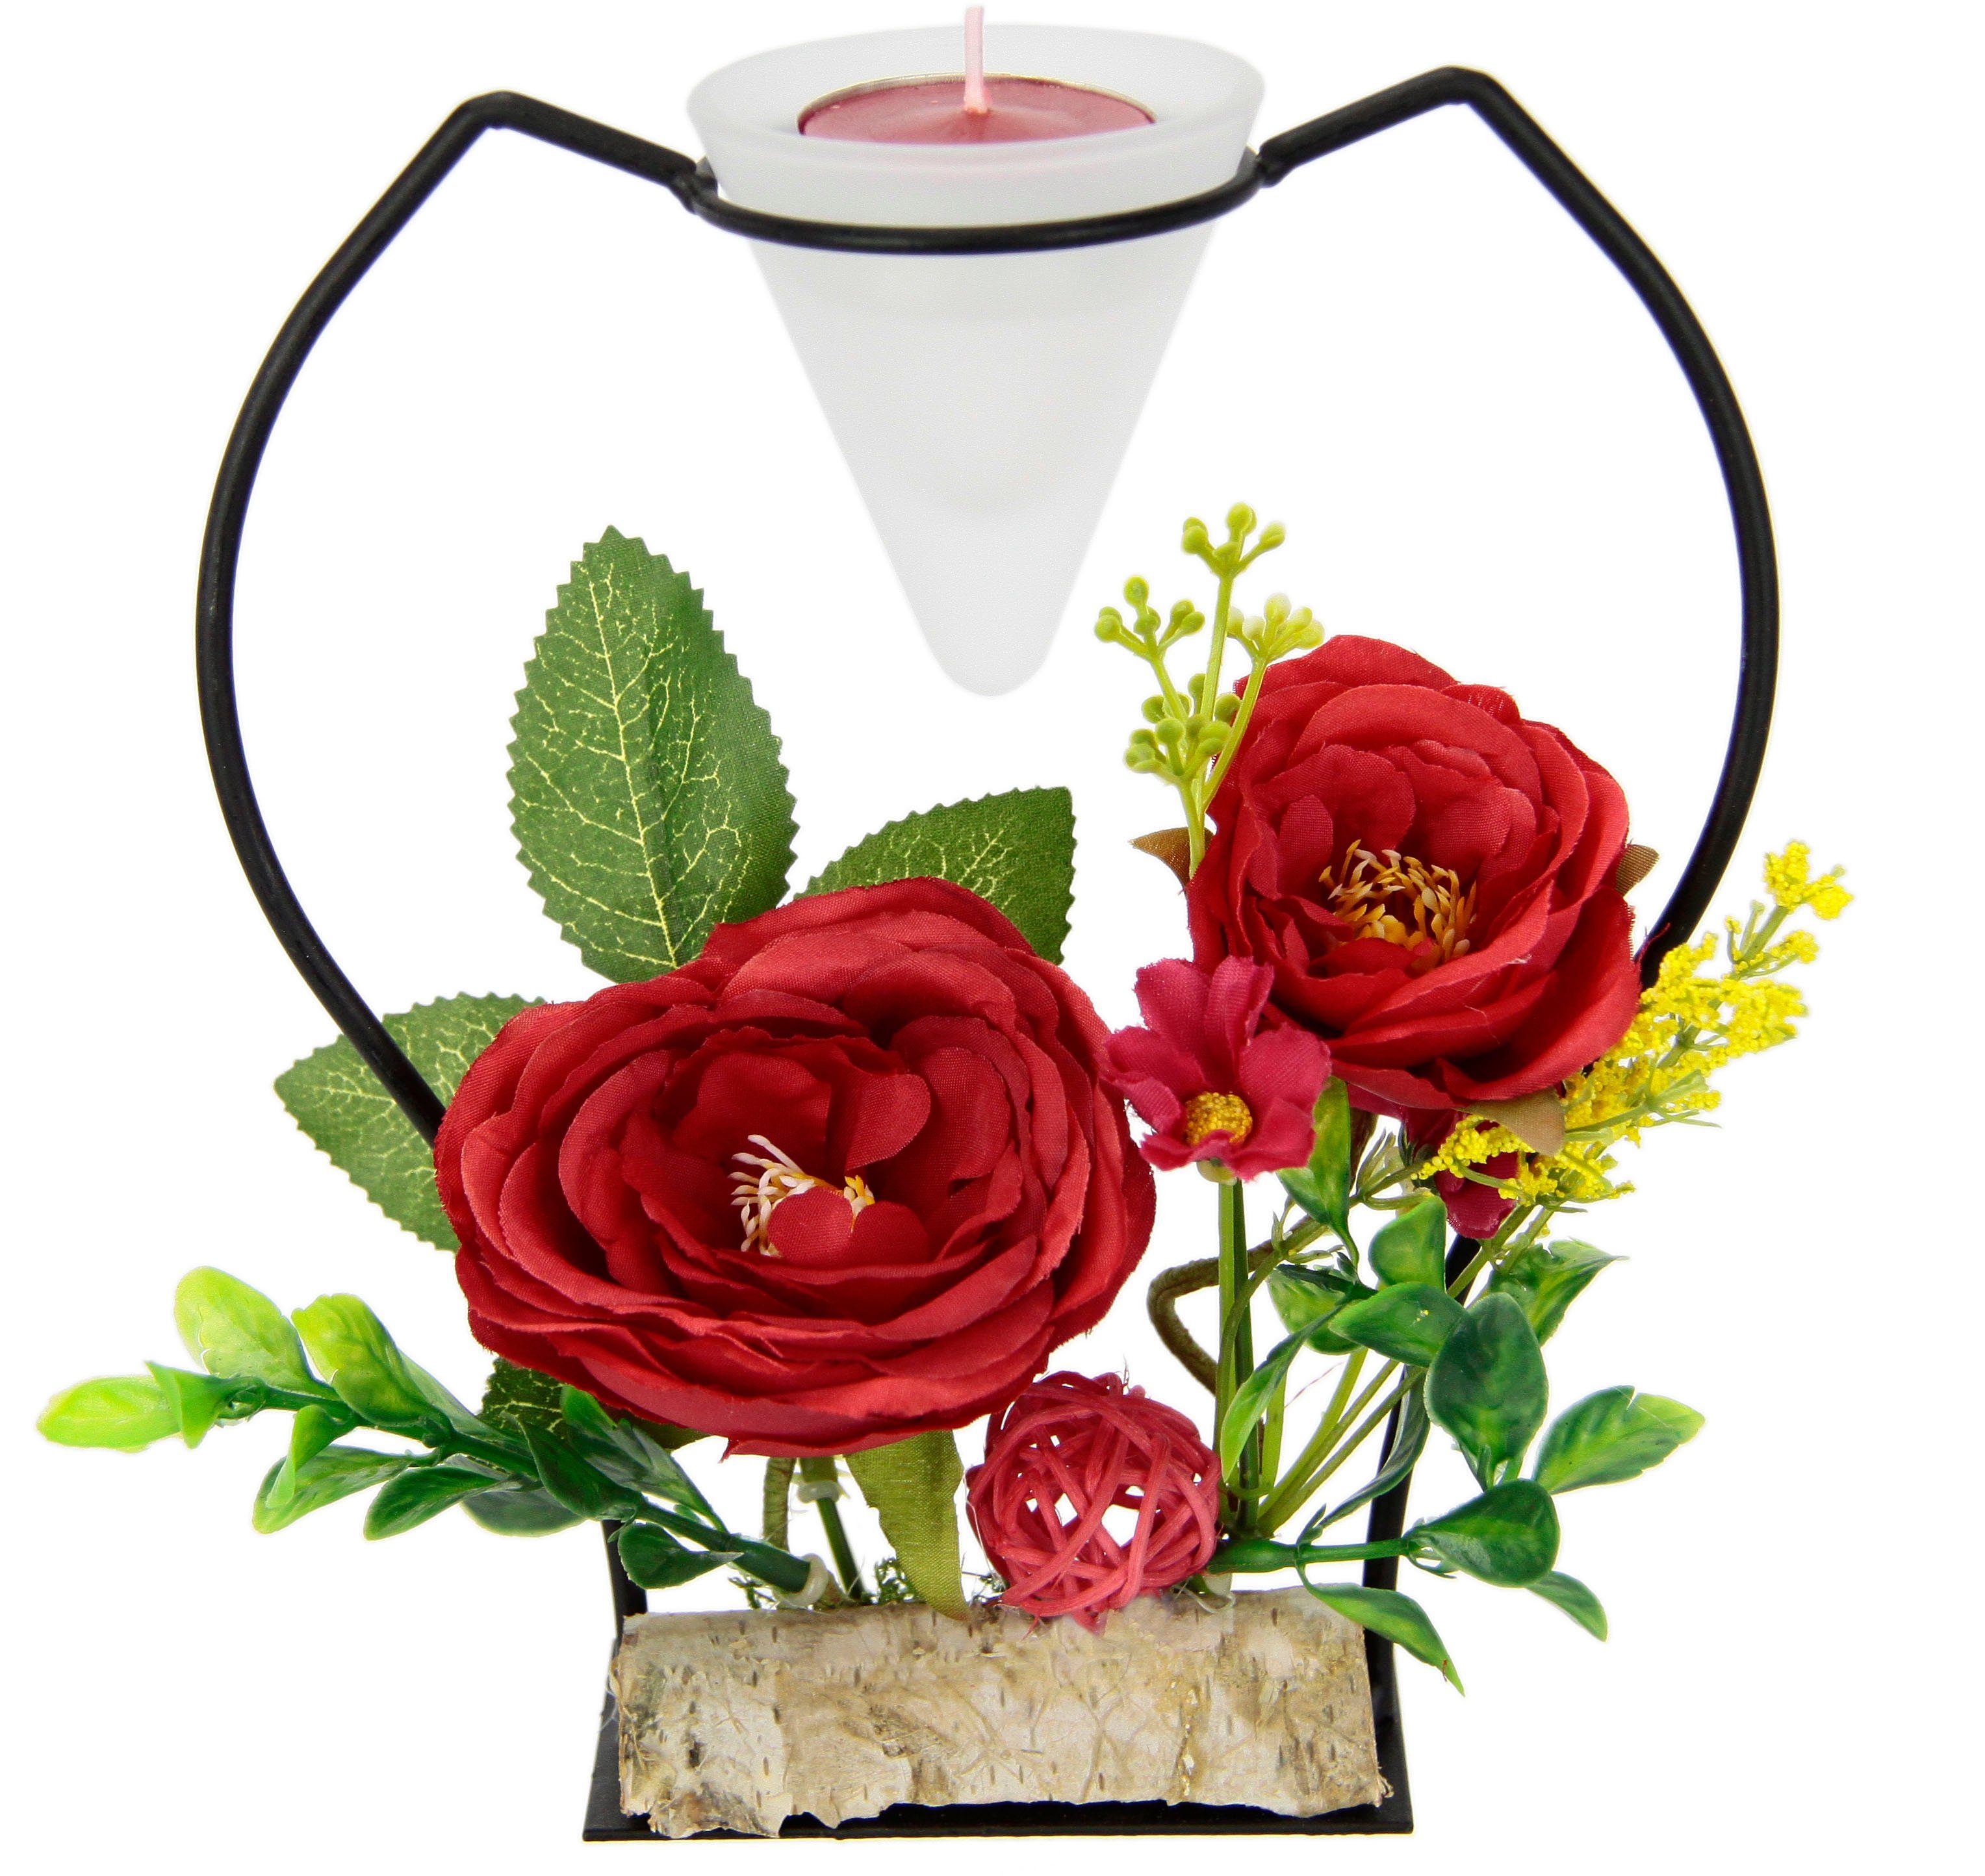 rot 3D I.GE.A. Rose, Advent Teelichthalter Kunstblumen Teelichtkerze Glaseinsatz Kerzenständer Metall